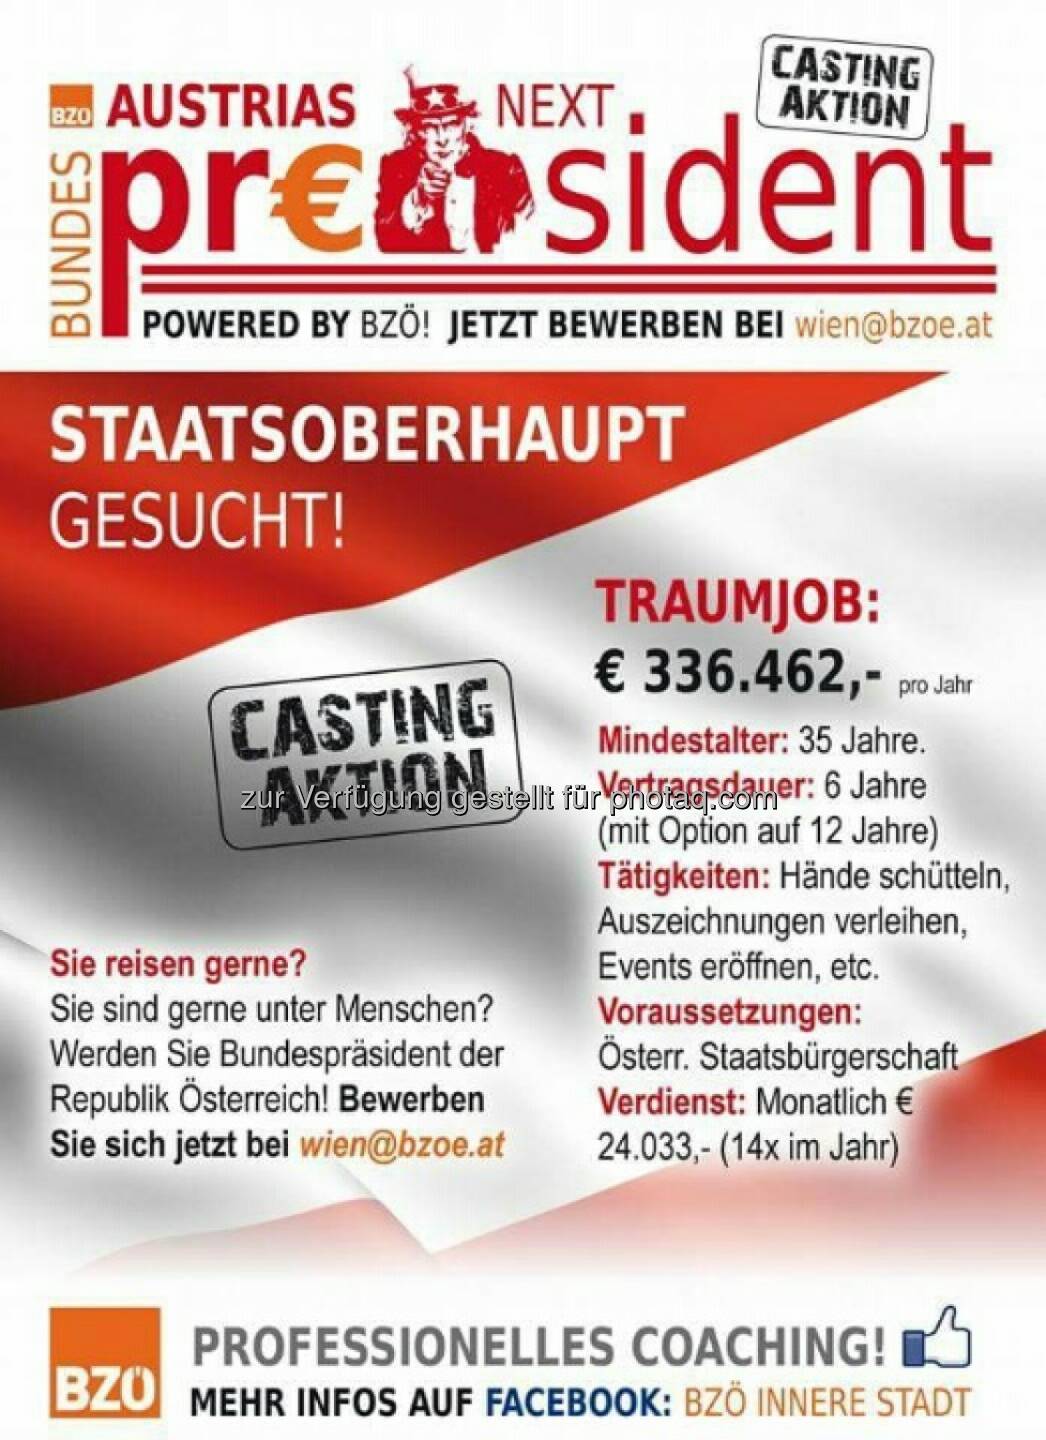 Austria’s next Bundespräsident : Kandidat/in der Herzen gesucht! : Powered by BZÖ : Fotocredit: BZÖ Wien